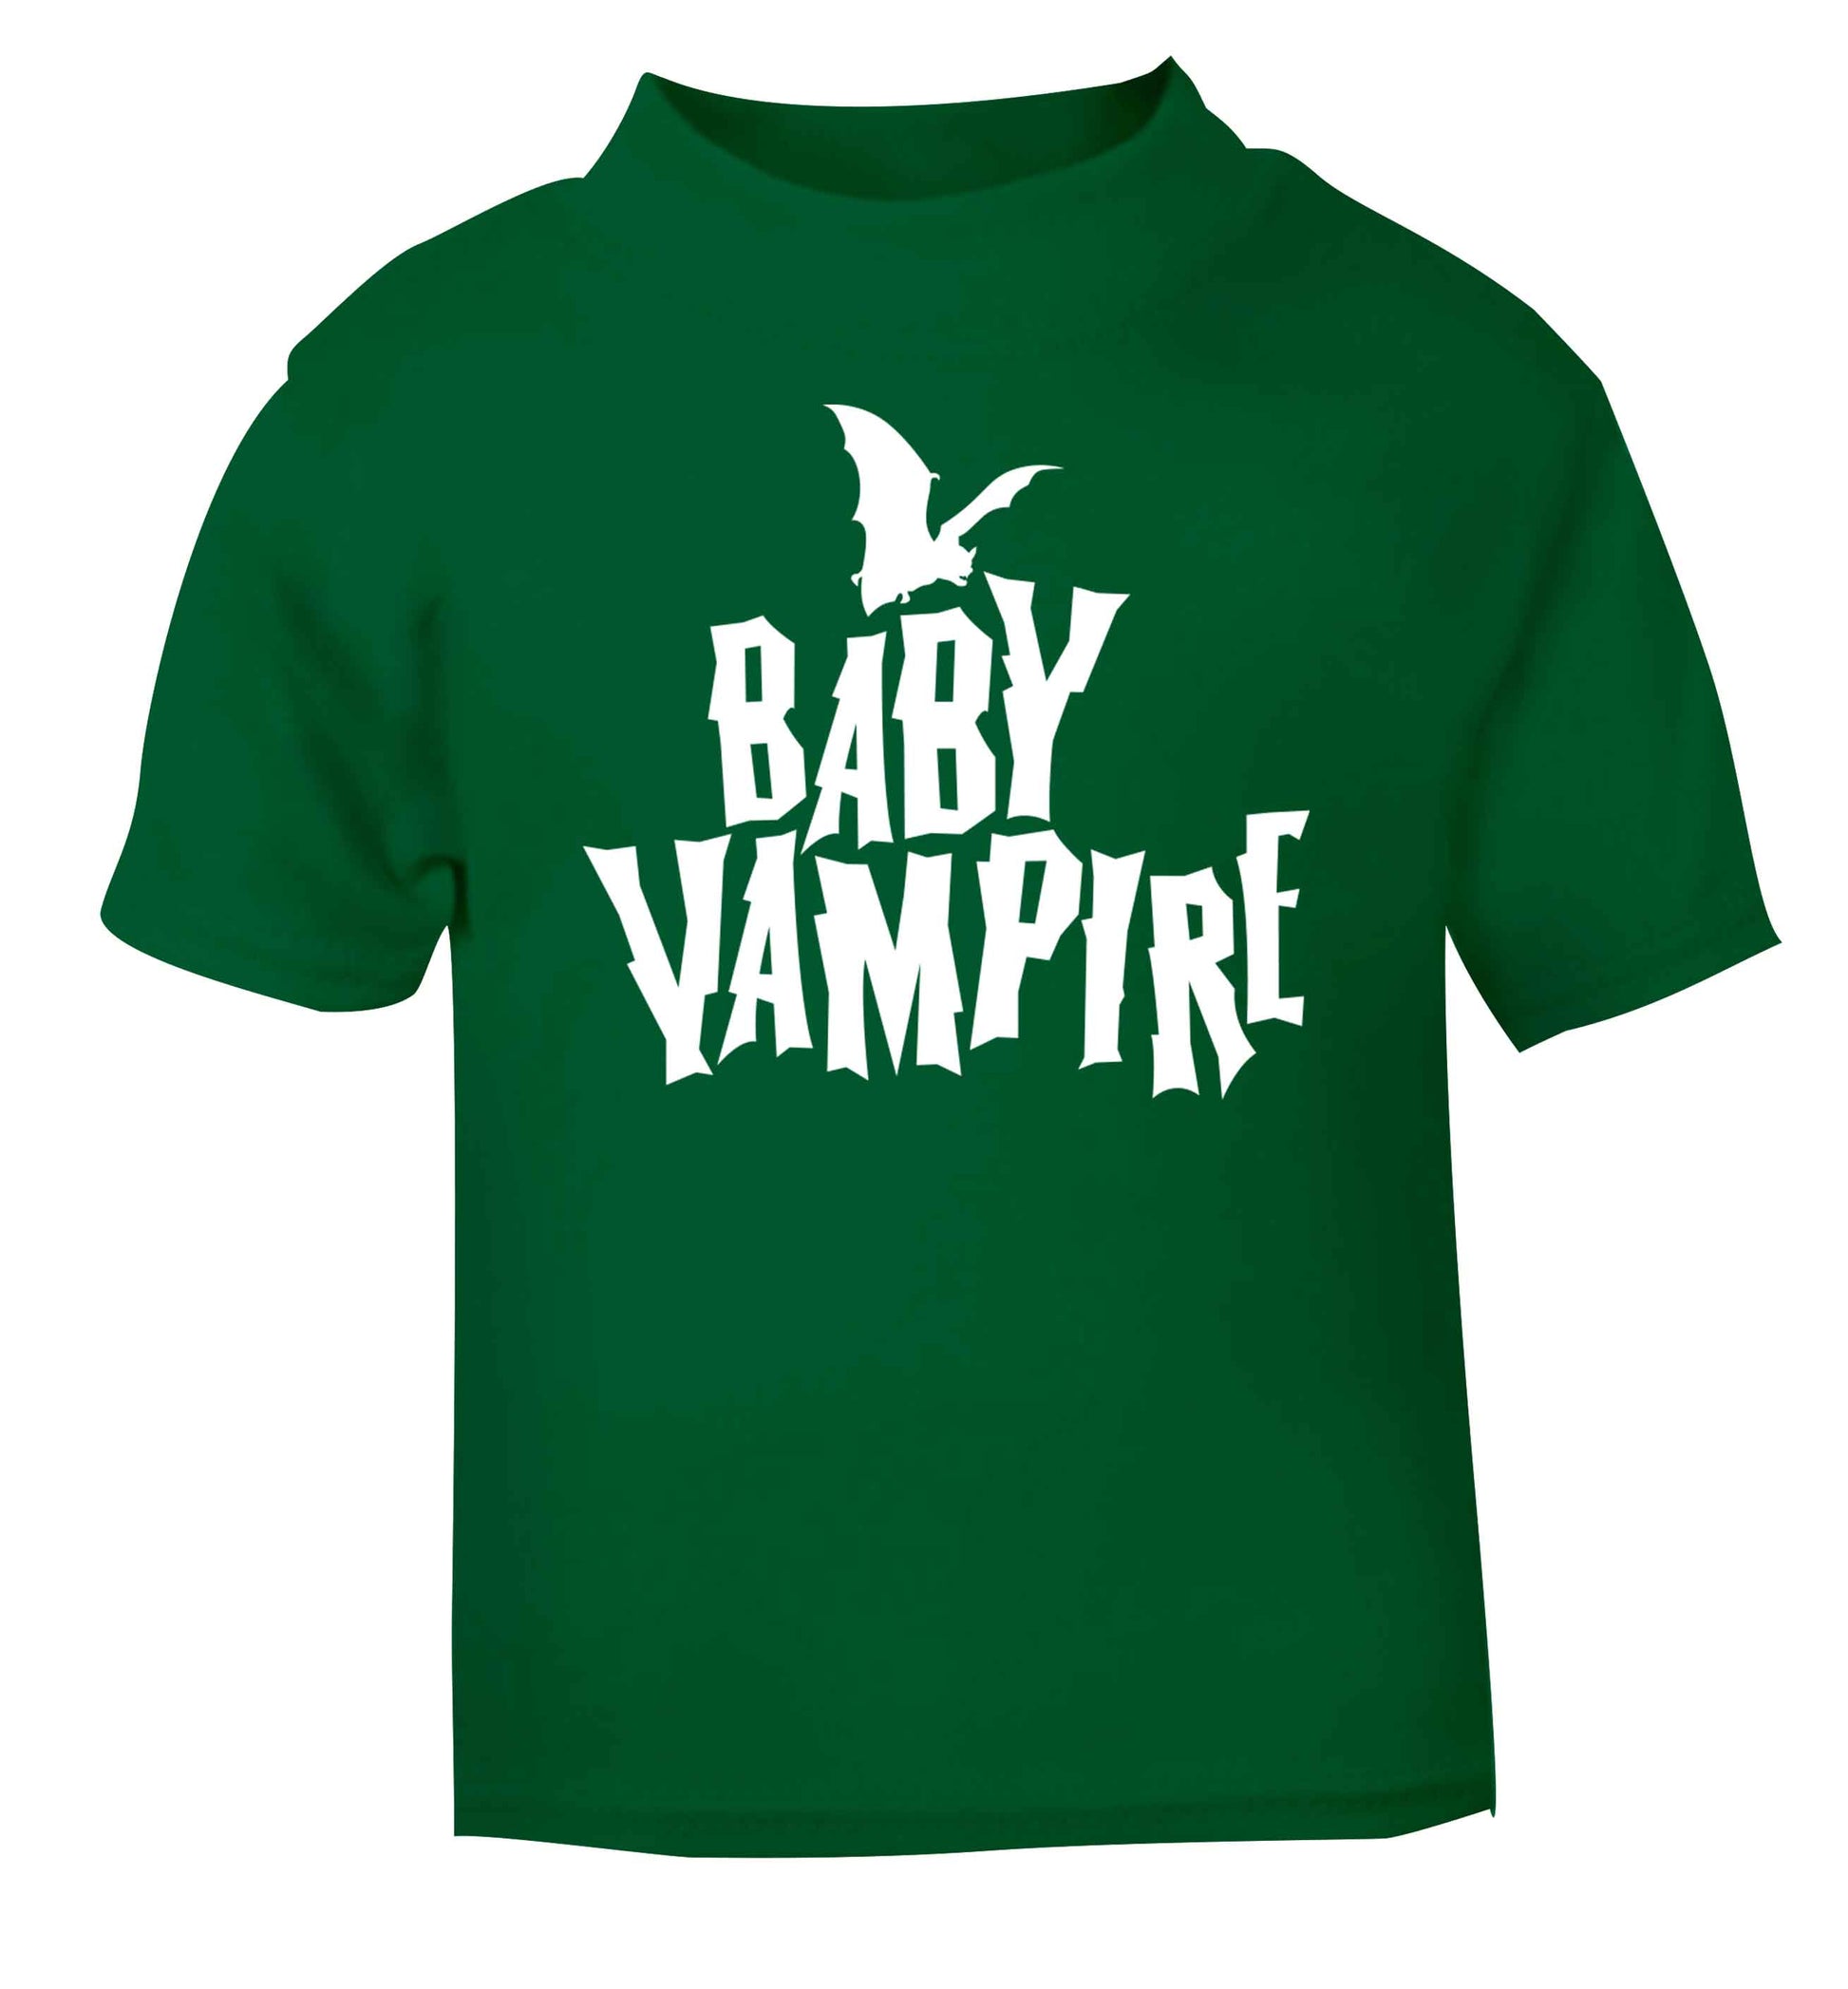 Baby vampire green baby toddler Tshirt 2 Years